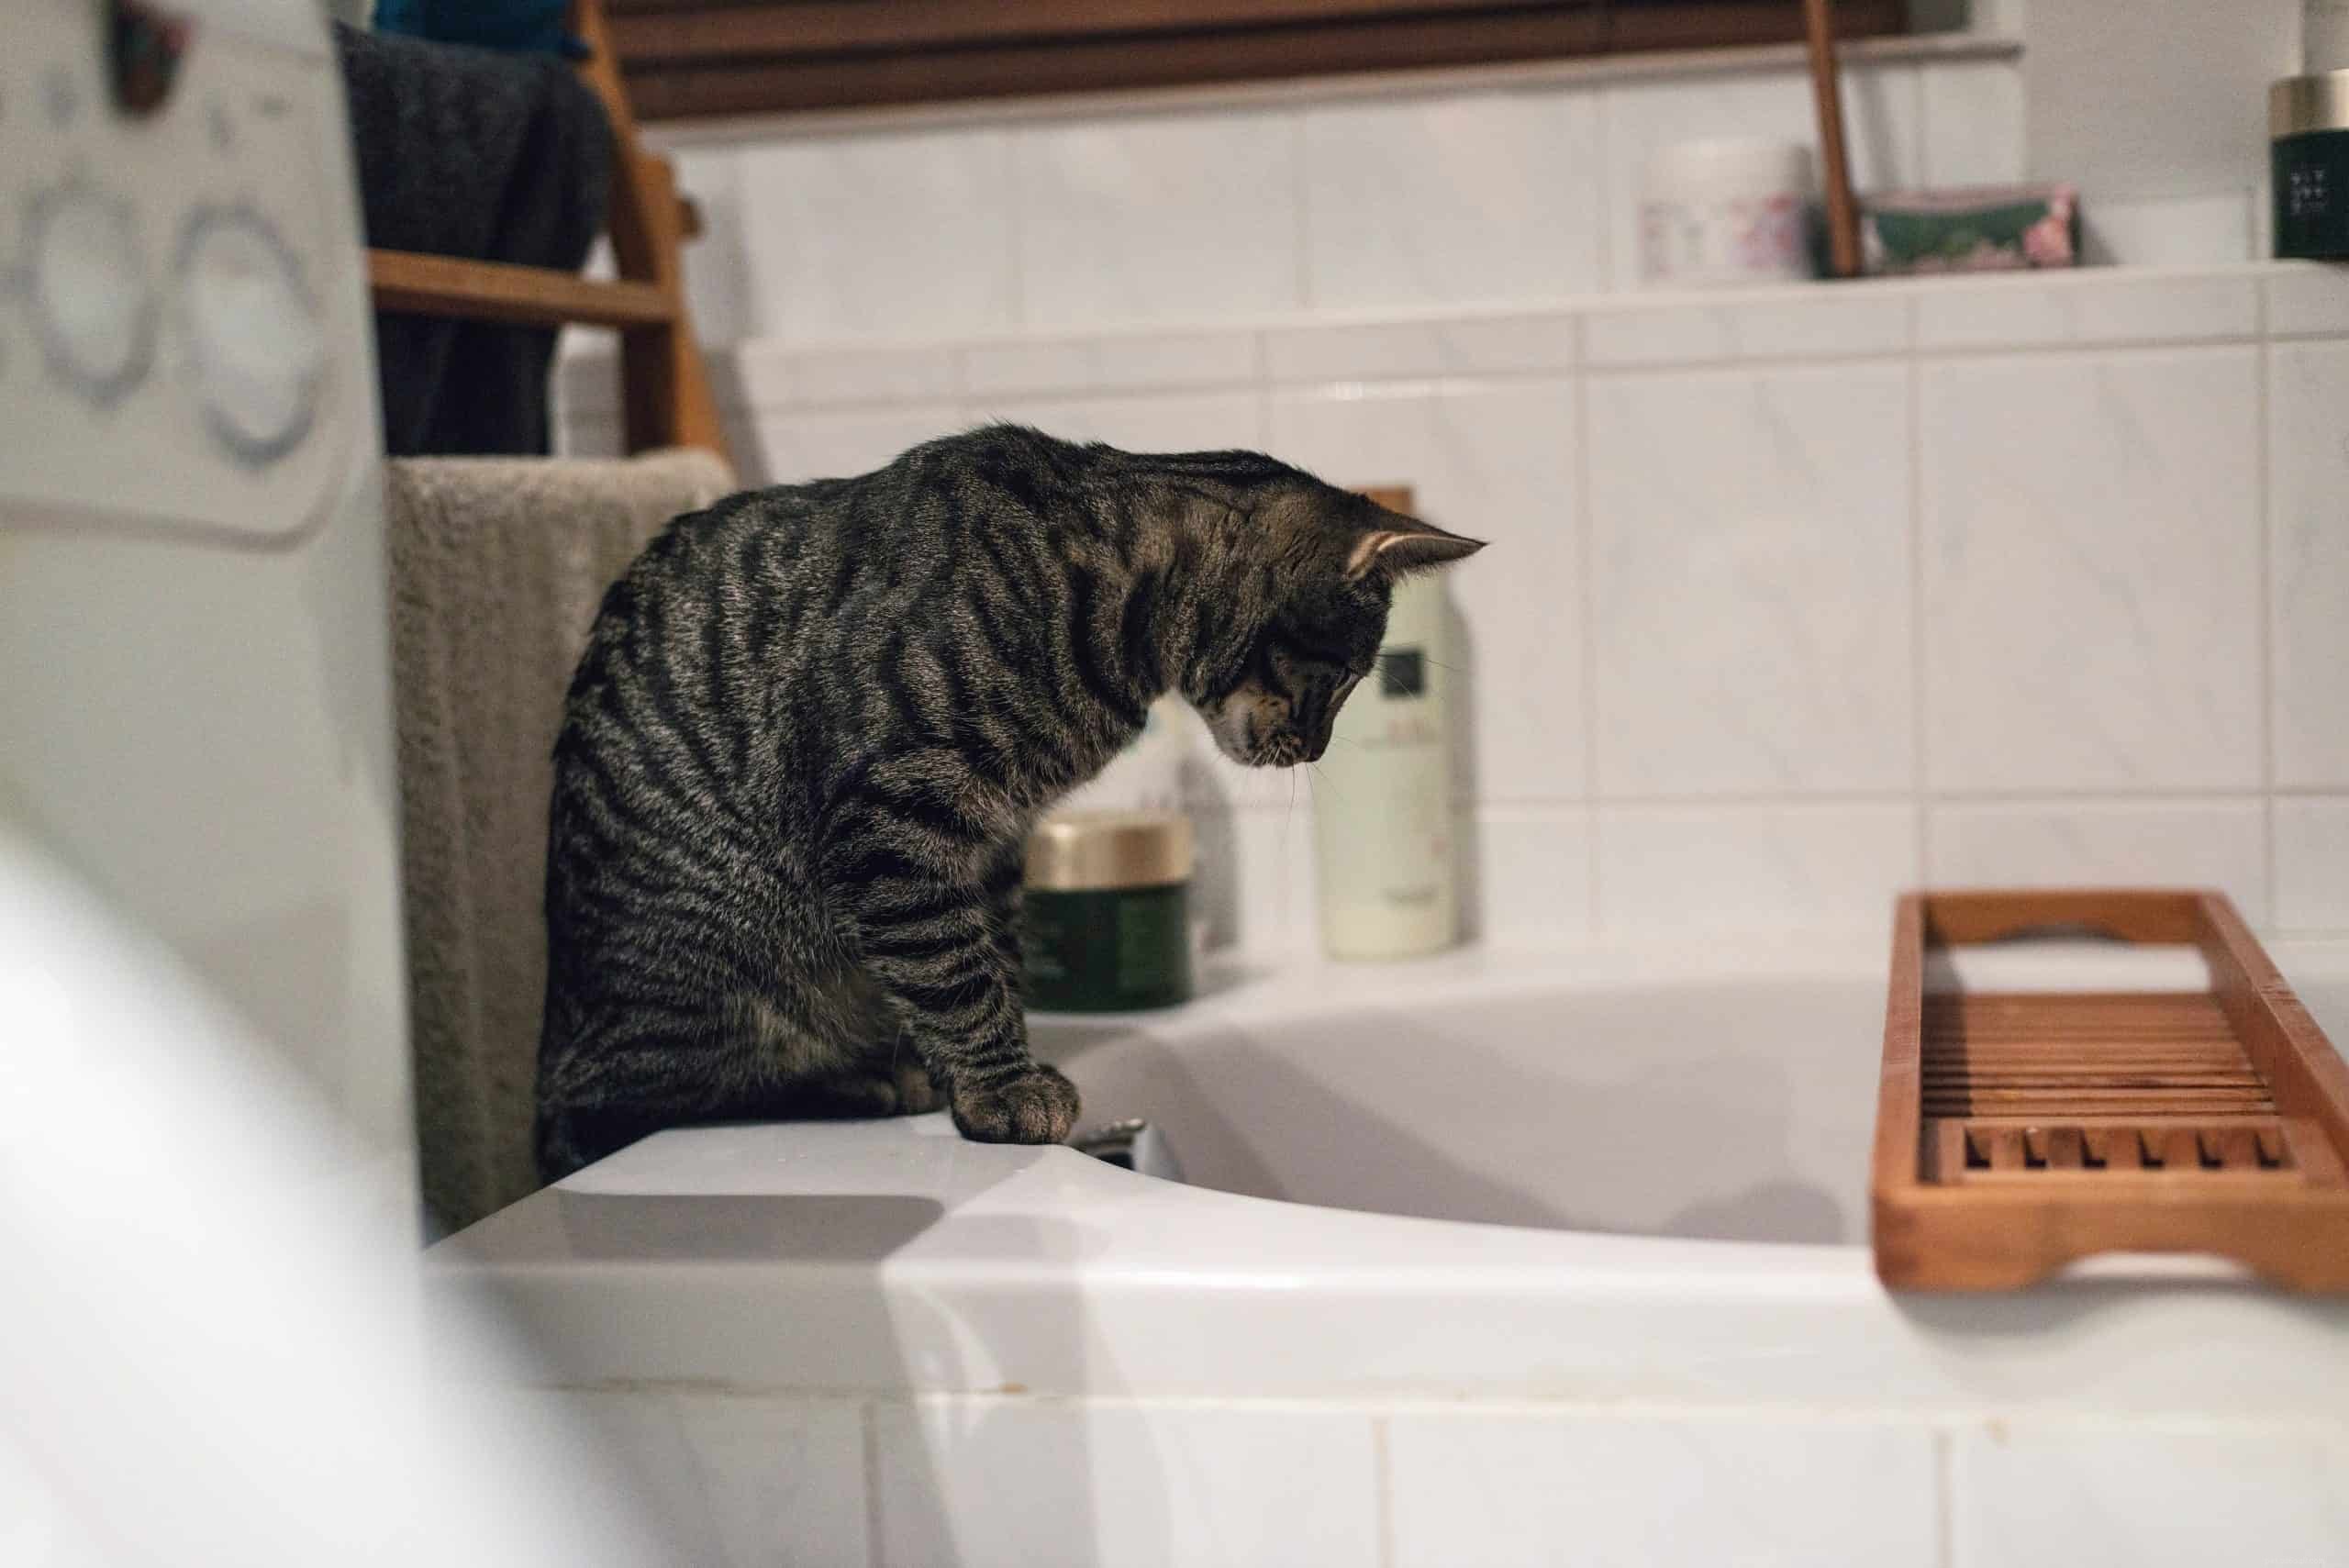 Perché la maggior parte dei gatti odia l acqua?